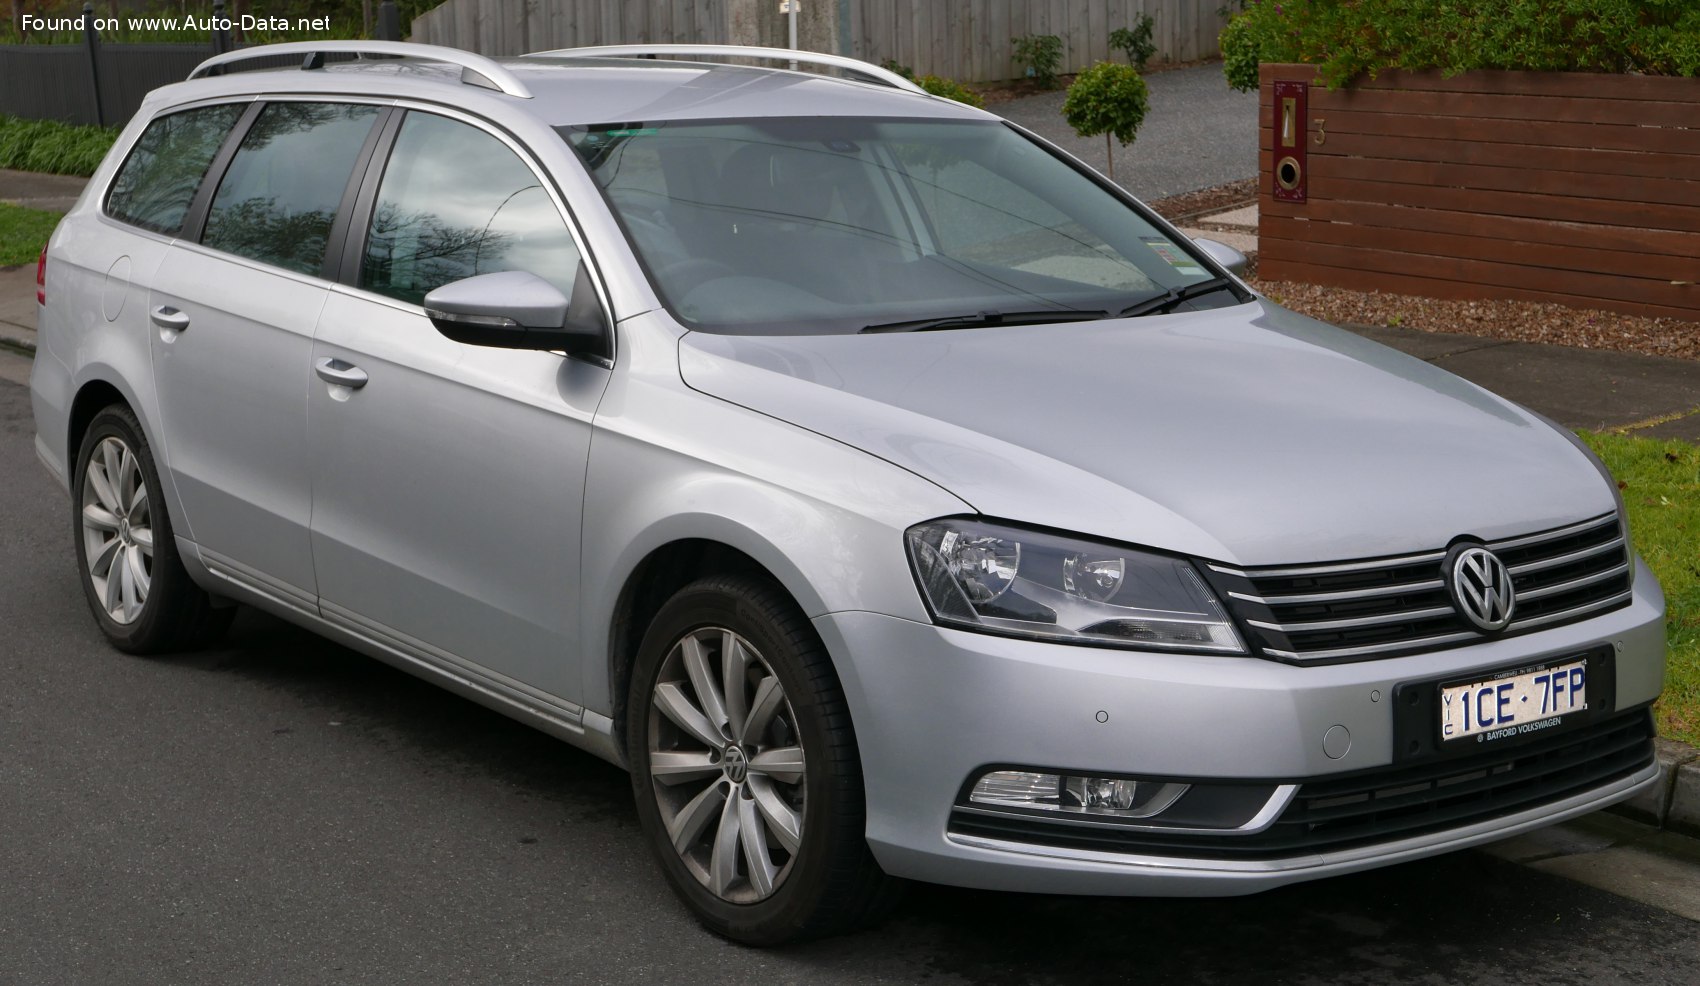 Volkswagen Variant (B7) | Technical Specs, Fuel consumption, Dimensions